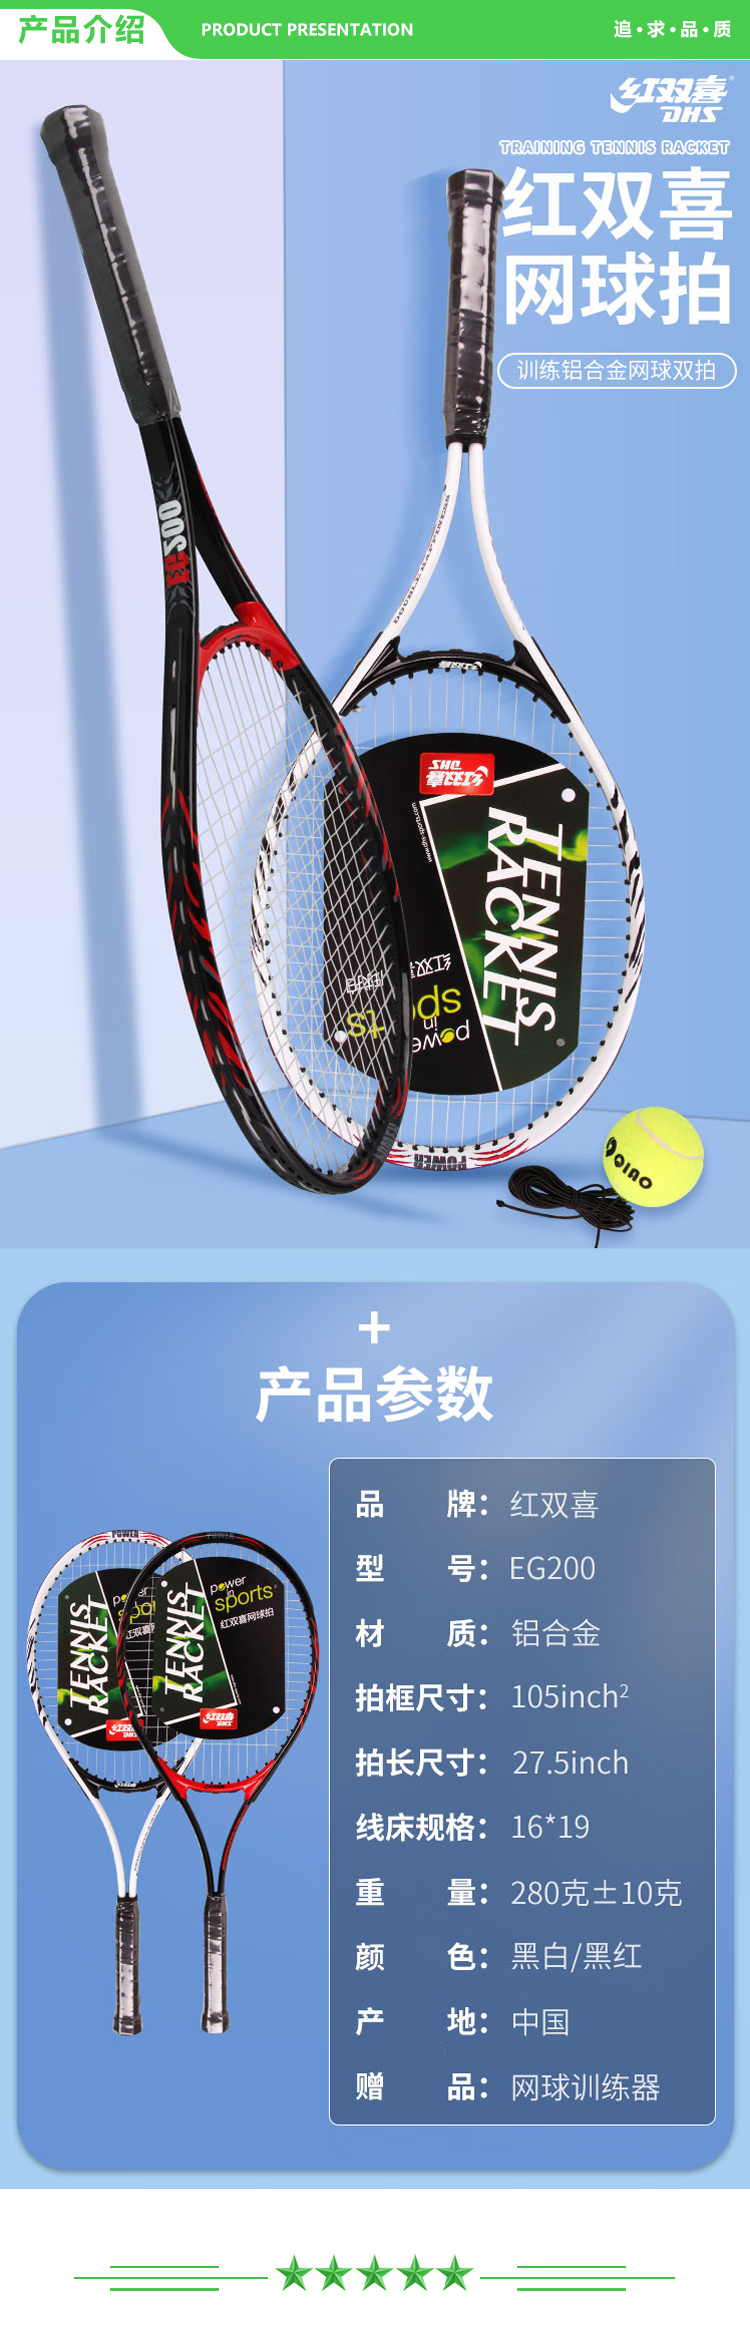 红双喜 DHS EG200 网球拍 黑白-黑红 对拍套装附网球回弹训练器手胶拍包铝合金双拍  (2).jpg